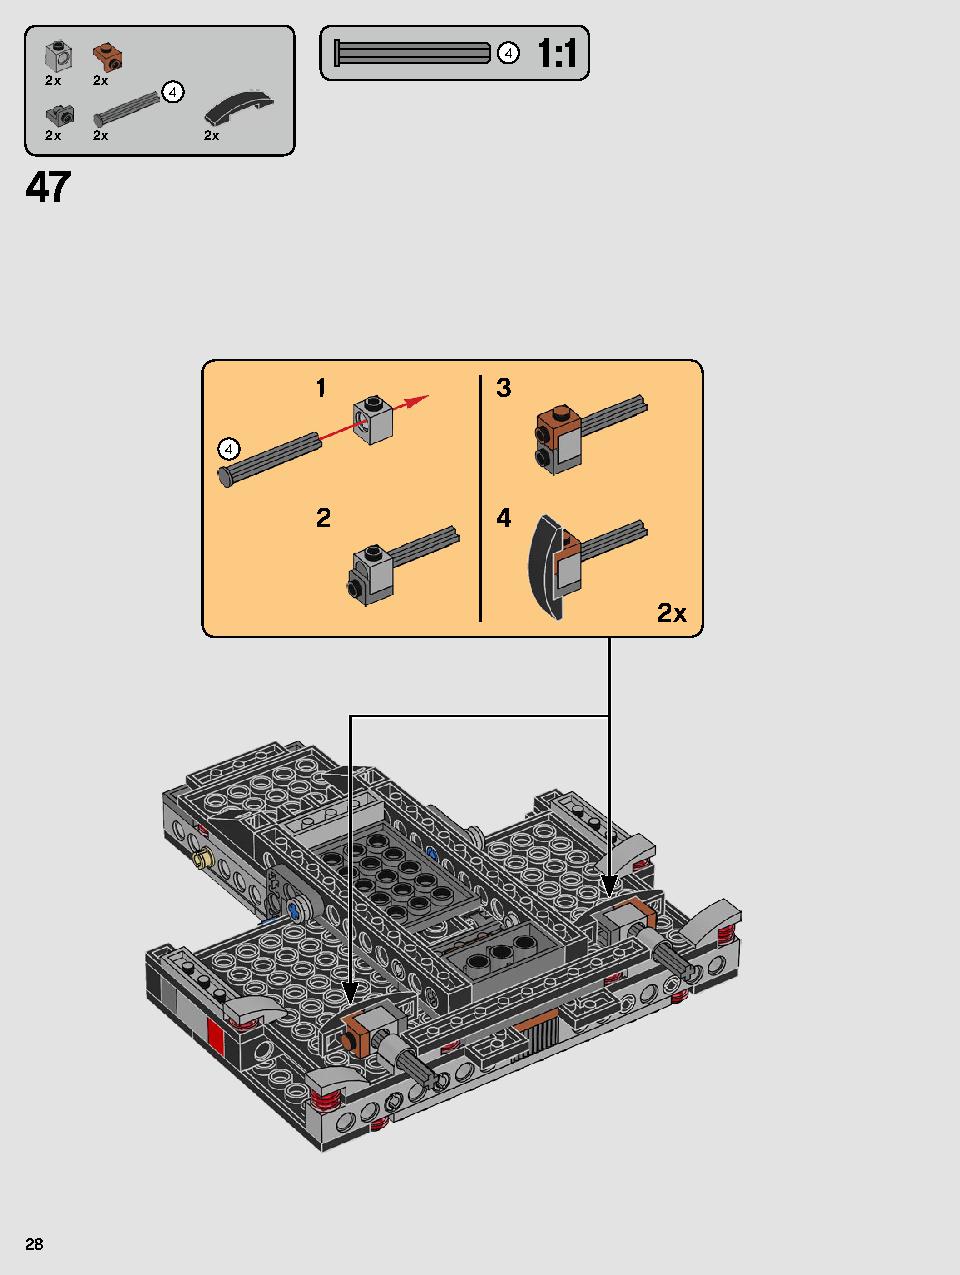 스타워즈 카일로 렌의 셔틀™ 75256 레고 세트 제품정보 레고 조립설명서 28 page